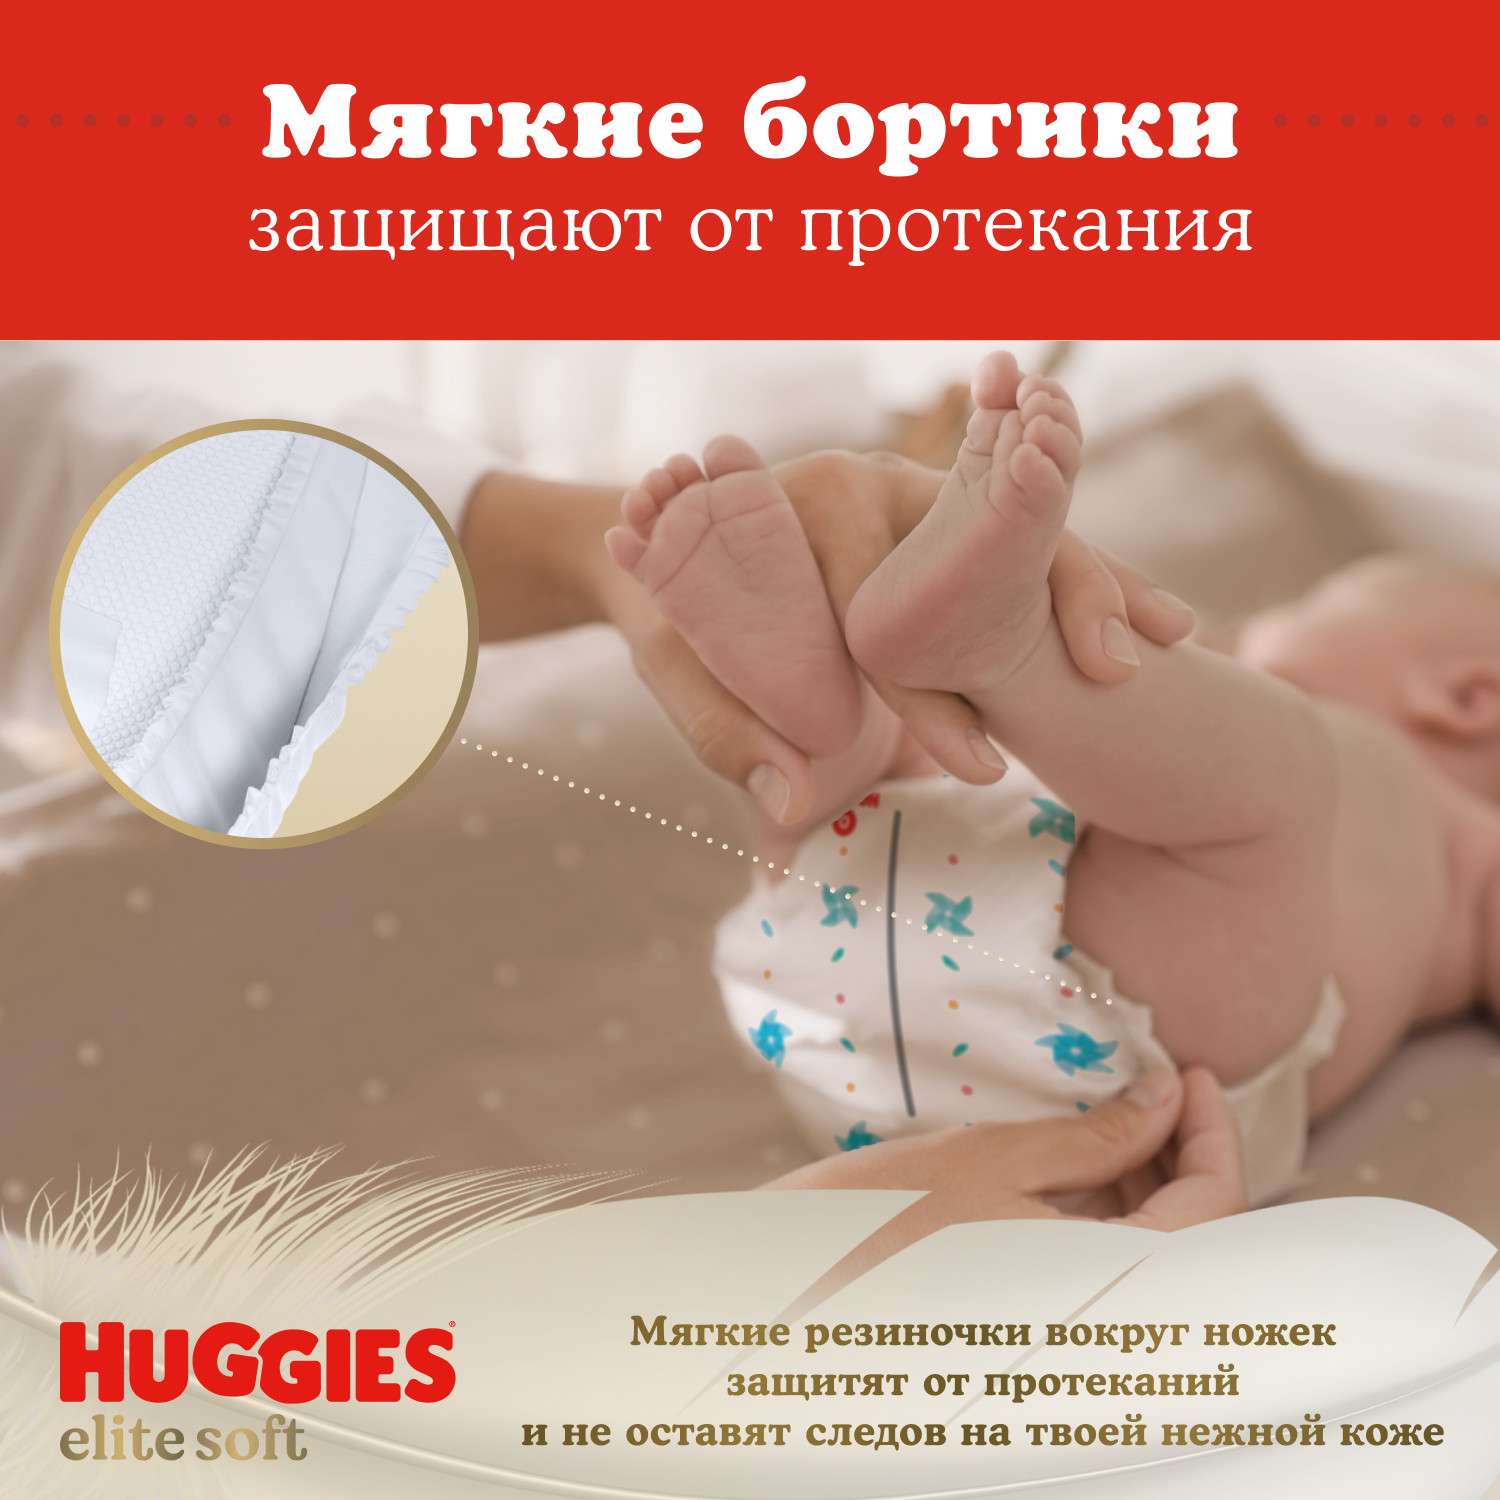 Подгузники Huggies Elite Soft для новорожденных 2 4-6кг 100шт - фото 8